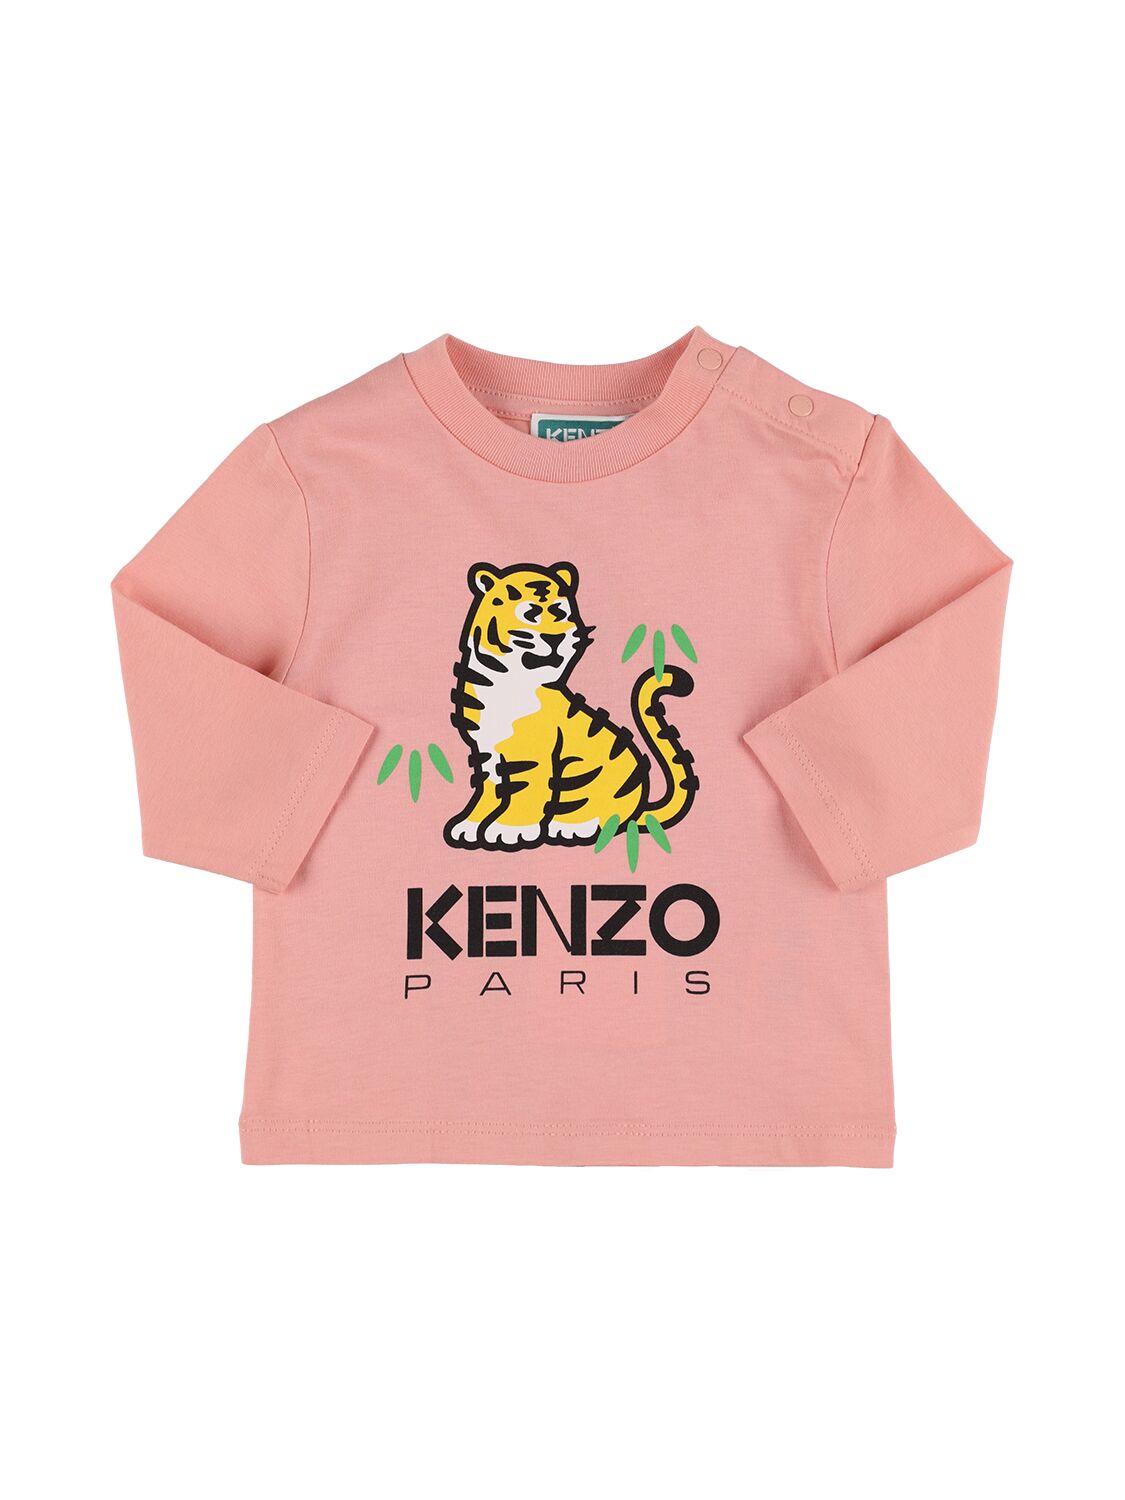 Kenzo Kids' Printed Organic Cotton T-shirt W/logo In Pink